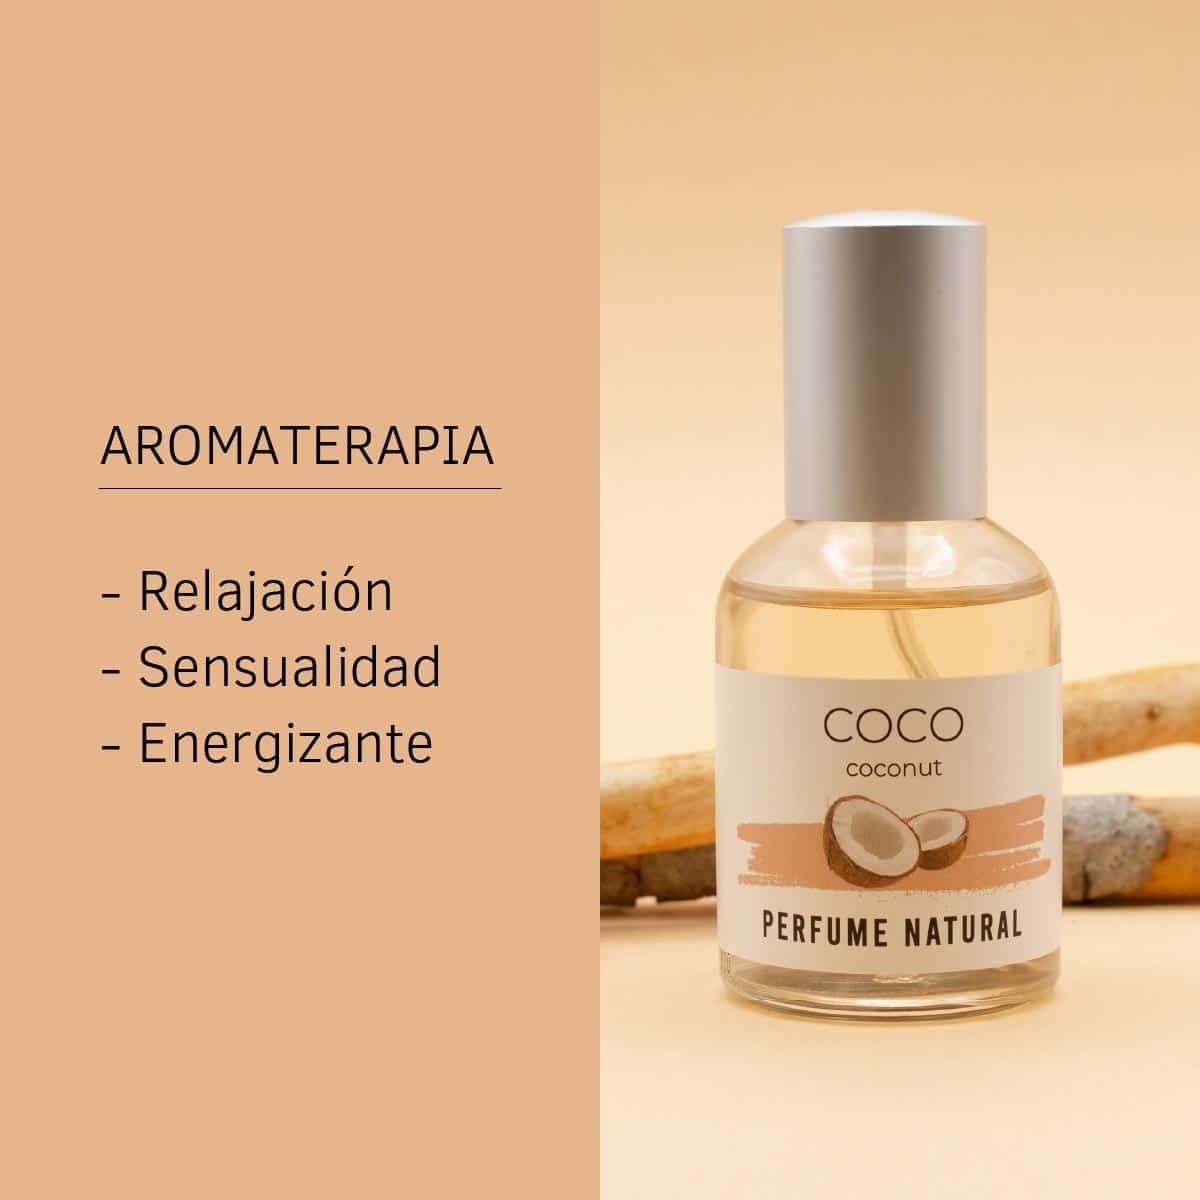 Aromaterapia perfume natural de coco 50ml sys